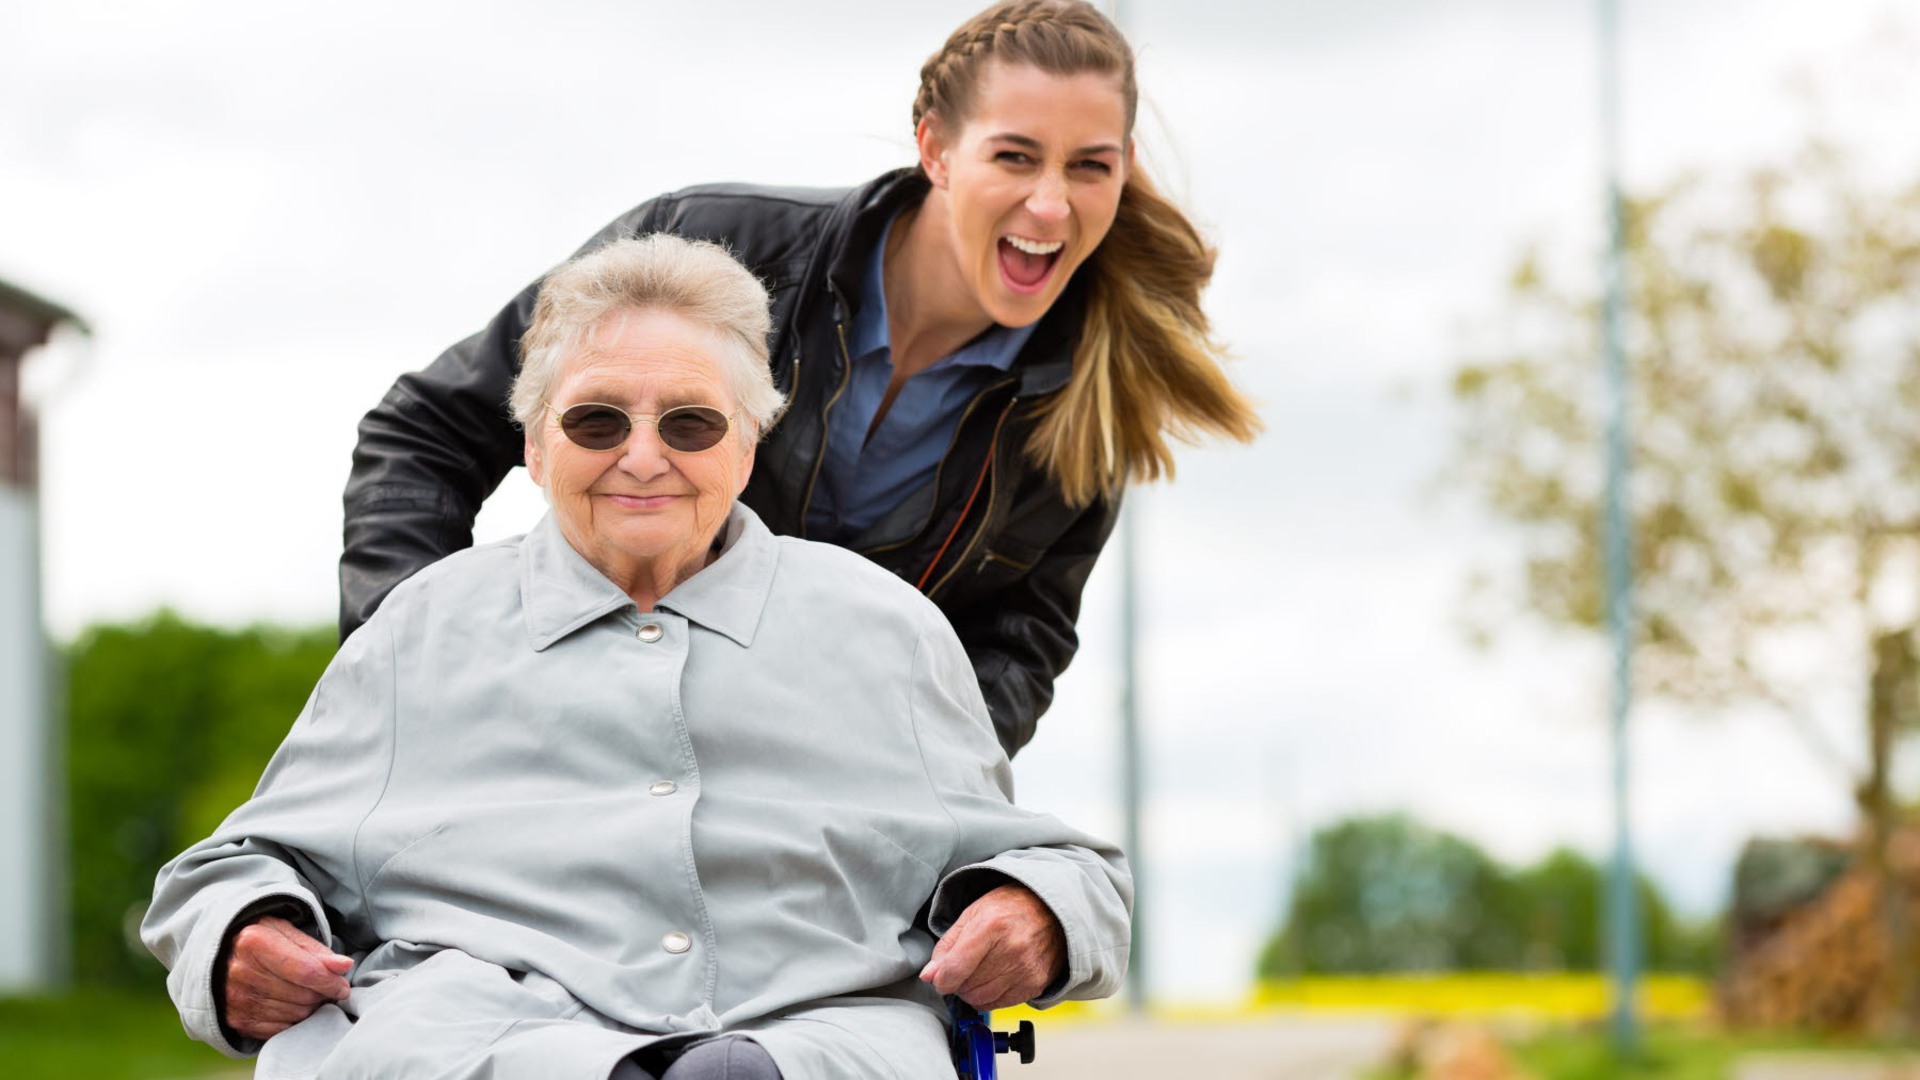 Vårdpersonal kör en äldre person i rullstol. Båda ser väldigt glada ut.